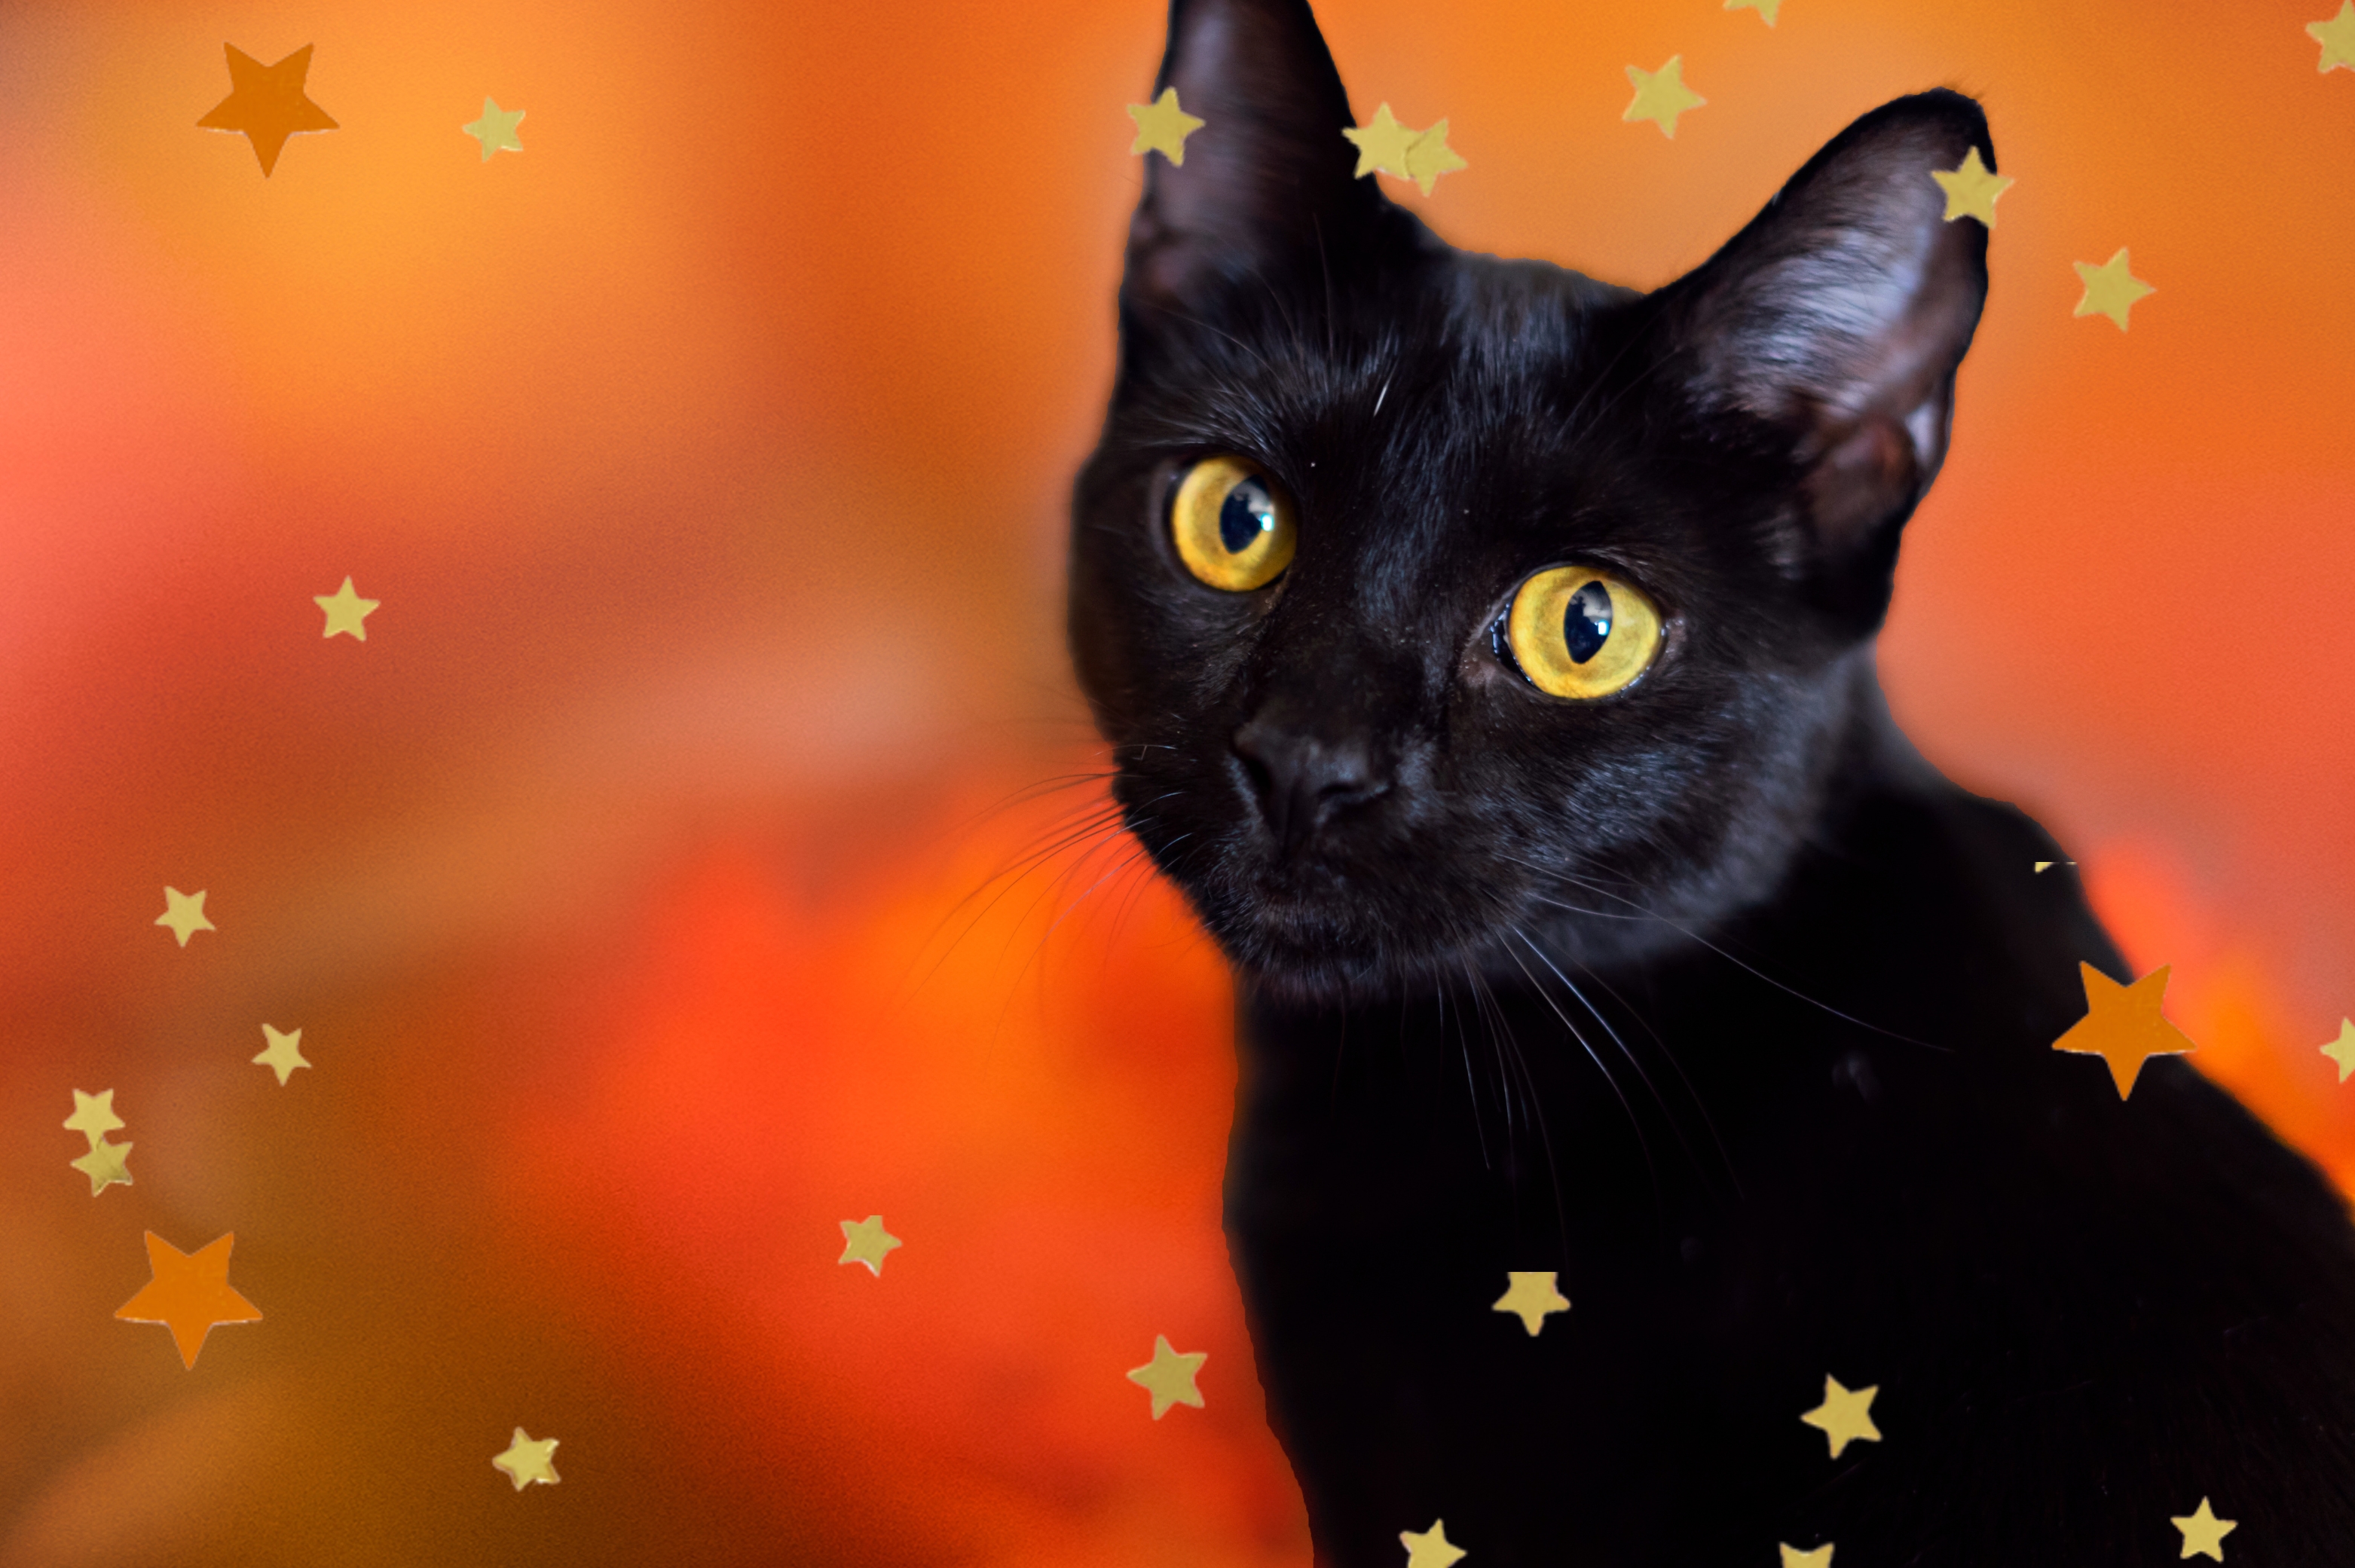 fotografia em modo retrato de um gatinho preto com os olhos amarelados e fundo laranja